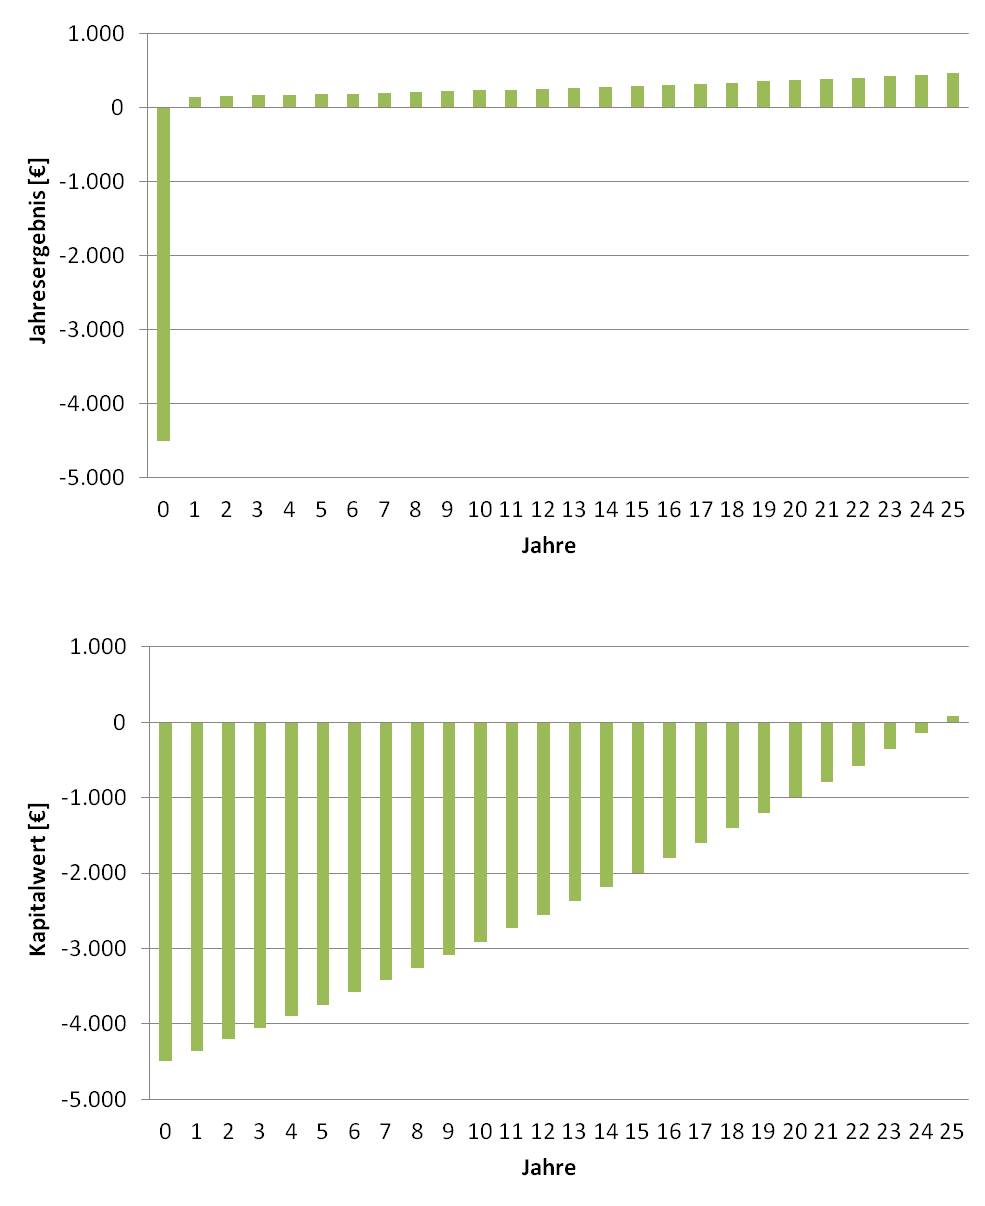 Beispiele für die Wirtschaftlichkeit einer Investition in eine Solarwärme-Anlage anhand des Jahresergebnisses und des Kapitalwerts mit dem Programm solarwaerme.xls vom Umweltinstitut München (Grafik: energie-experten.org)